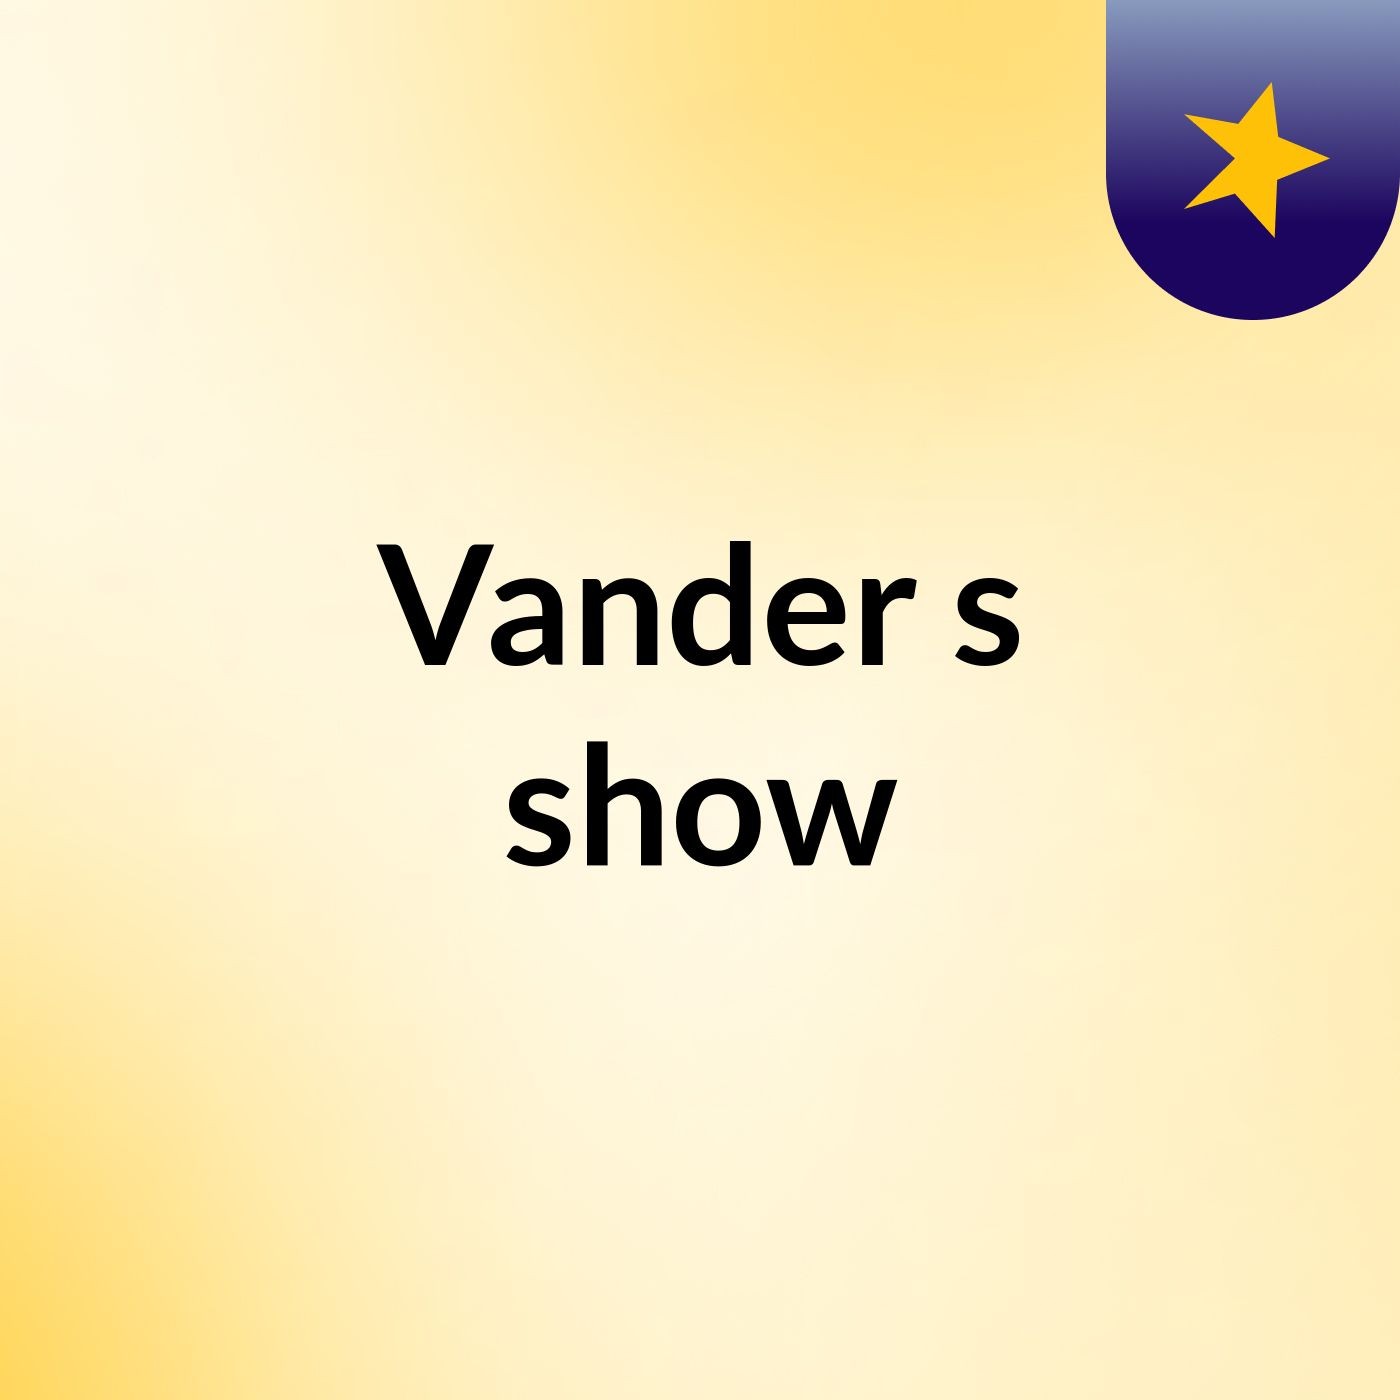 Vander's show